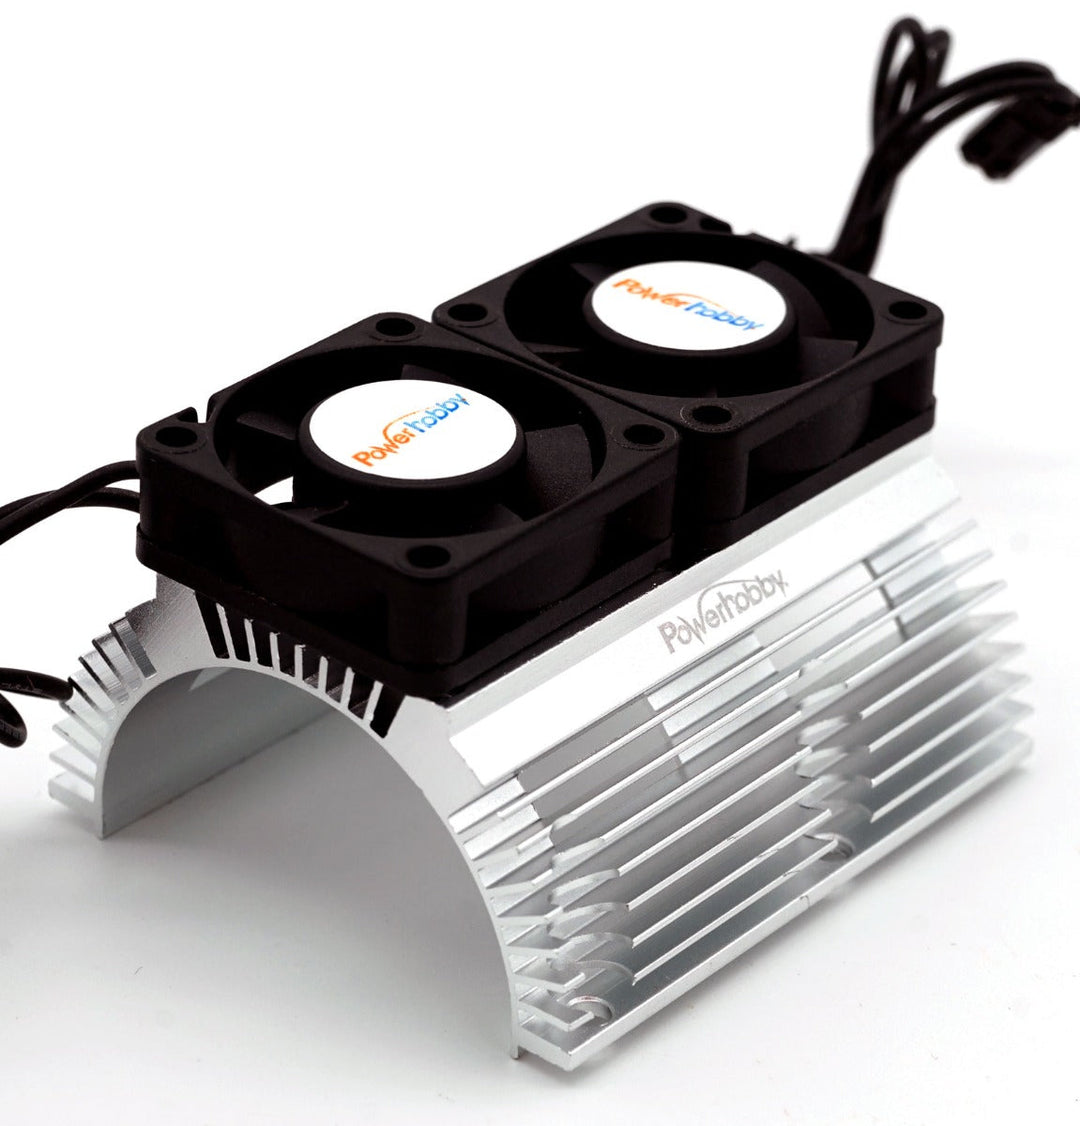 Powerhobby Heat Sink w Twin Turbo High Speed Cooling Fans 1/8 Motors PH1289